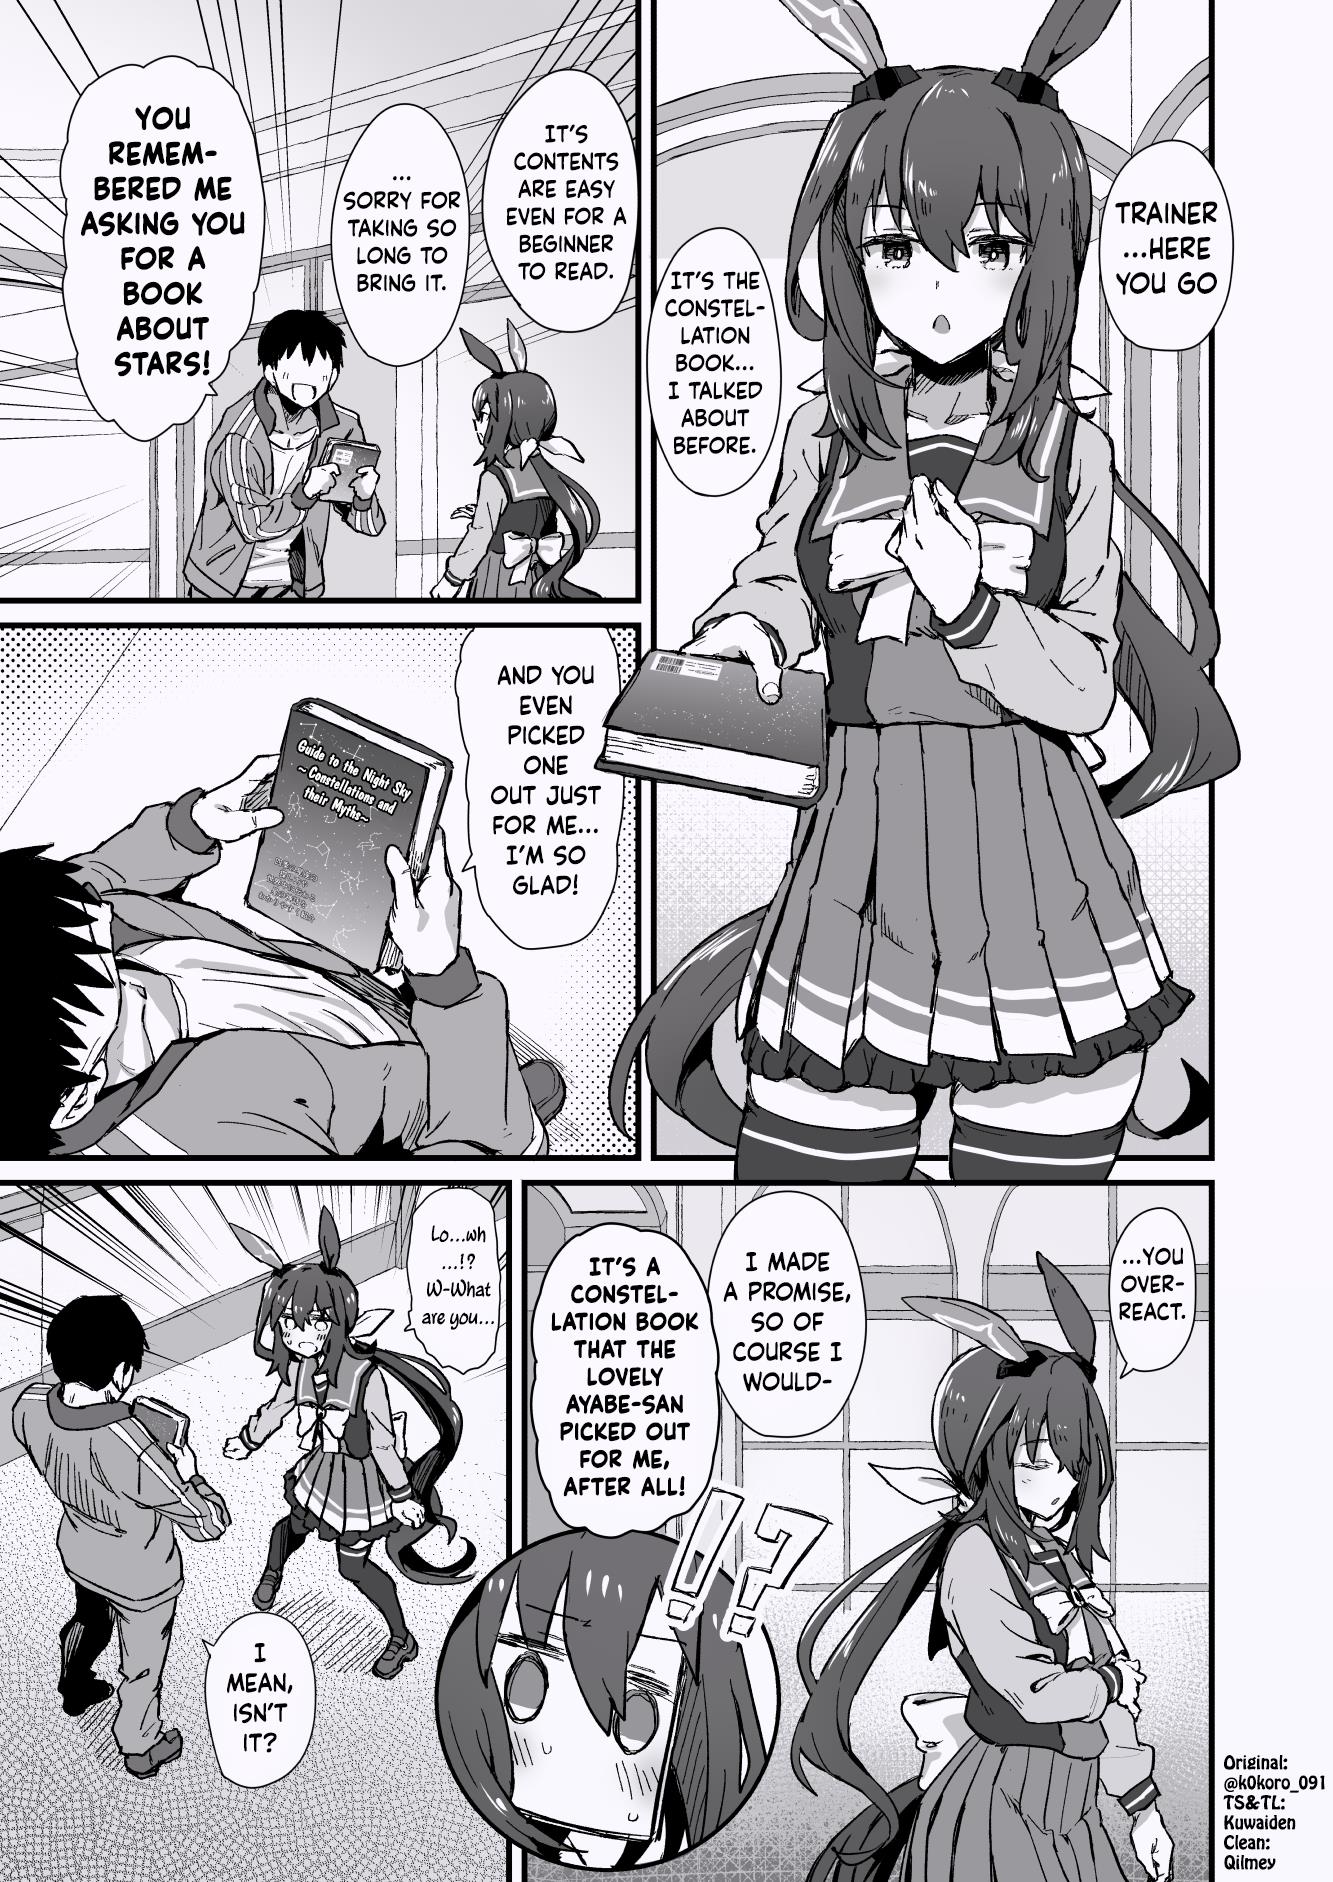 Kokoro-Sensei's Umamusume Shorts (Doujinshi) - Page 1